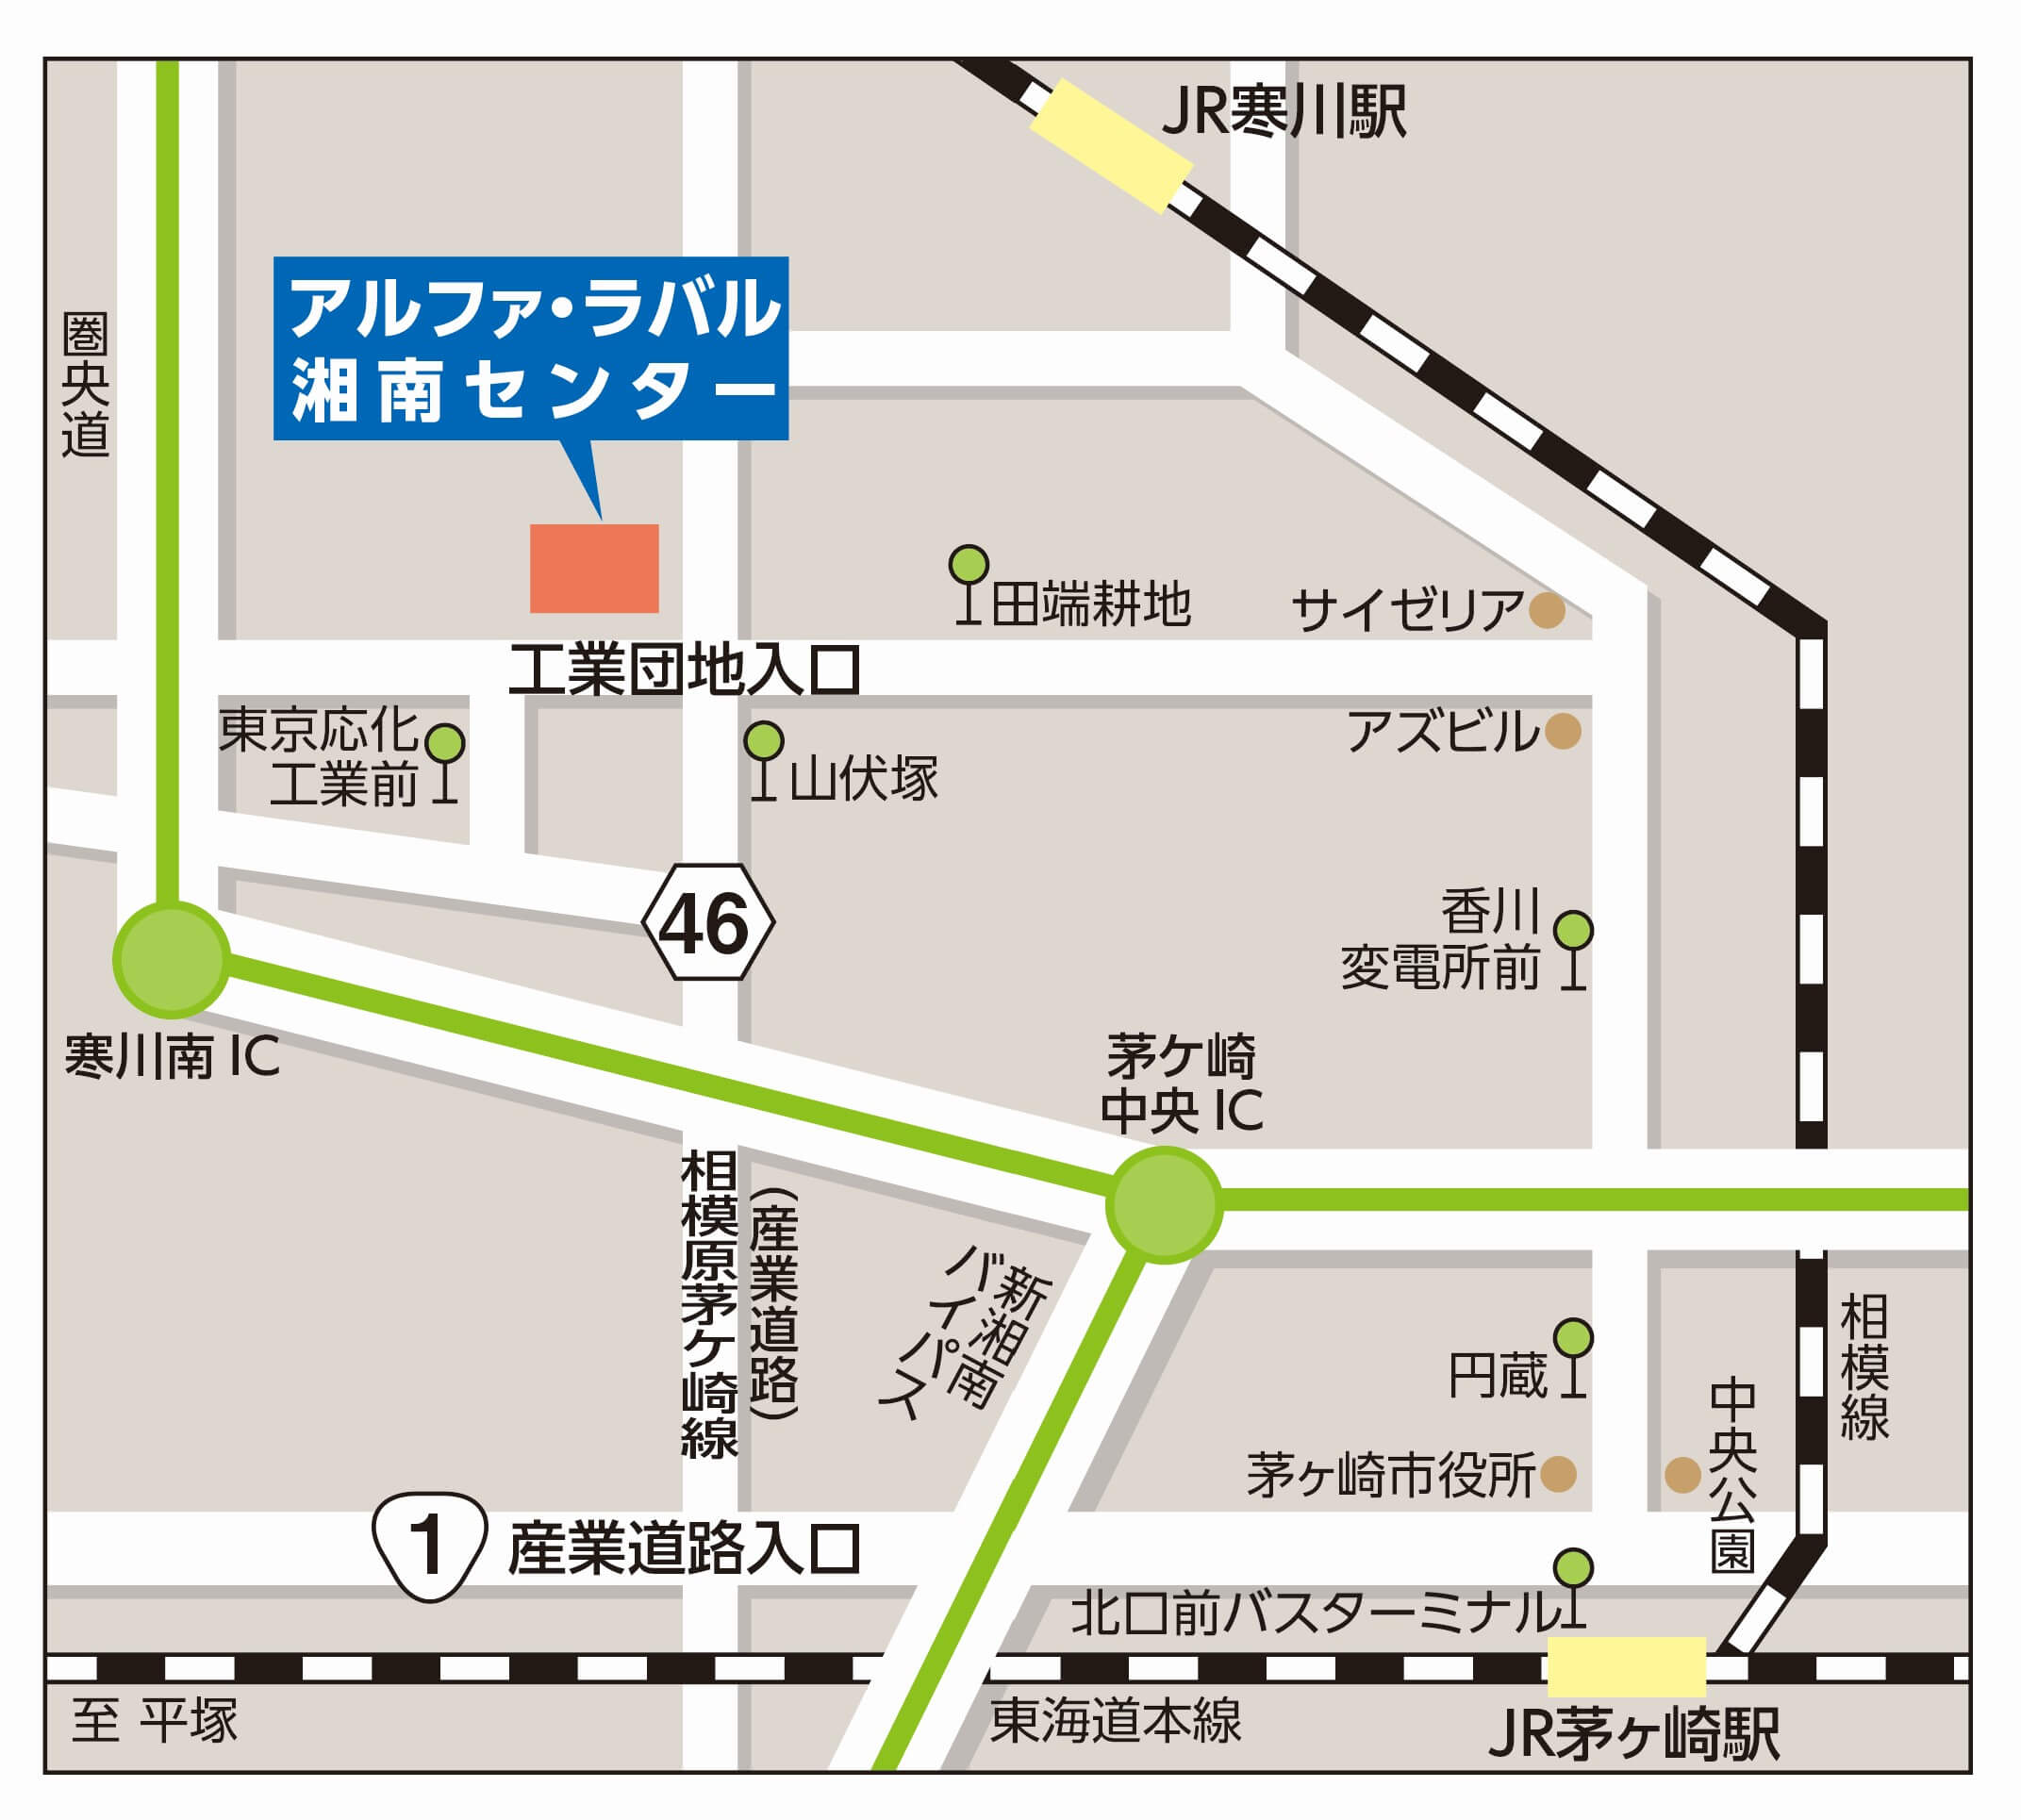 アルファ・ラバル 湘南センターアクセスマップ.jpg